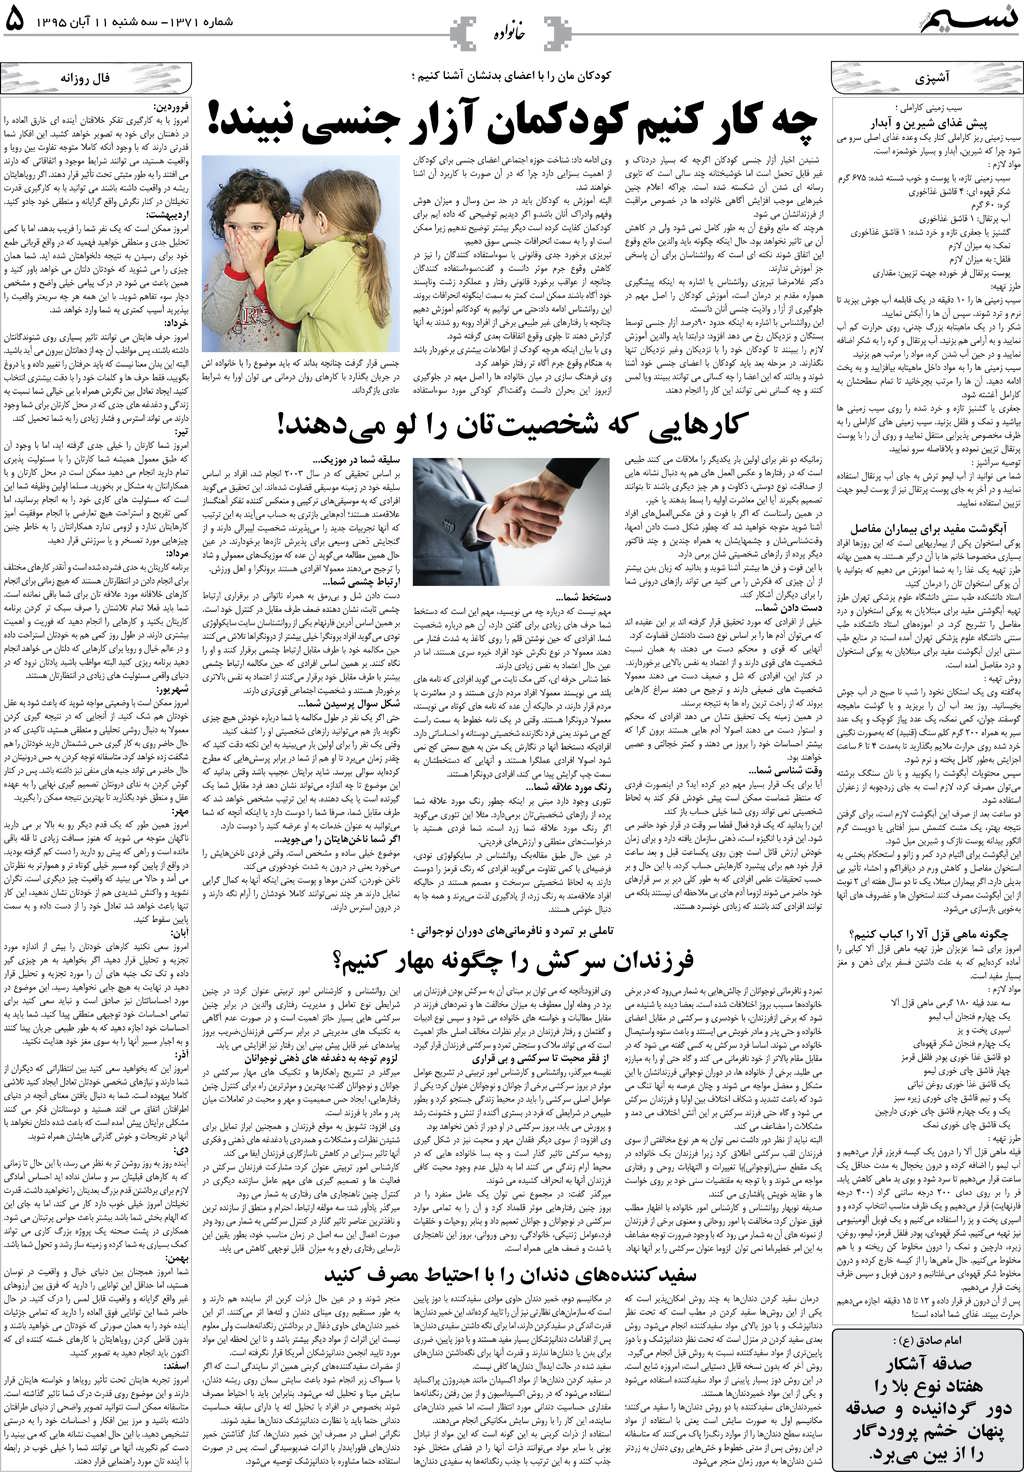 صفحه خانواده روزنامه نسیم شماره 1371